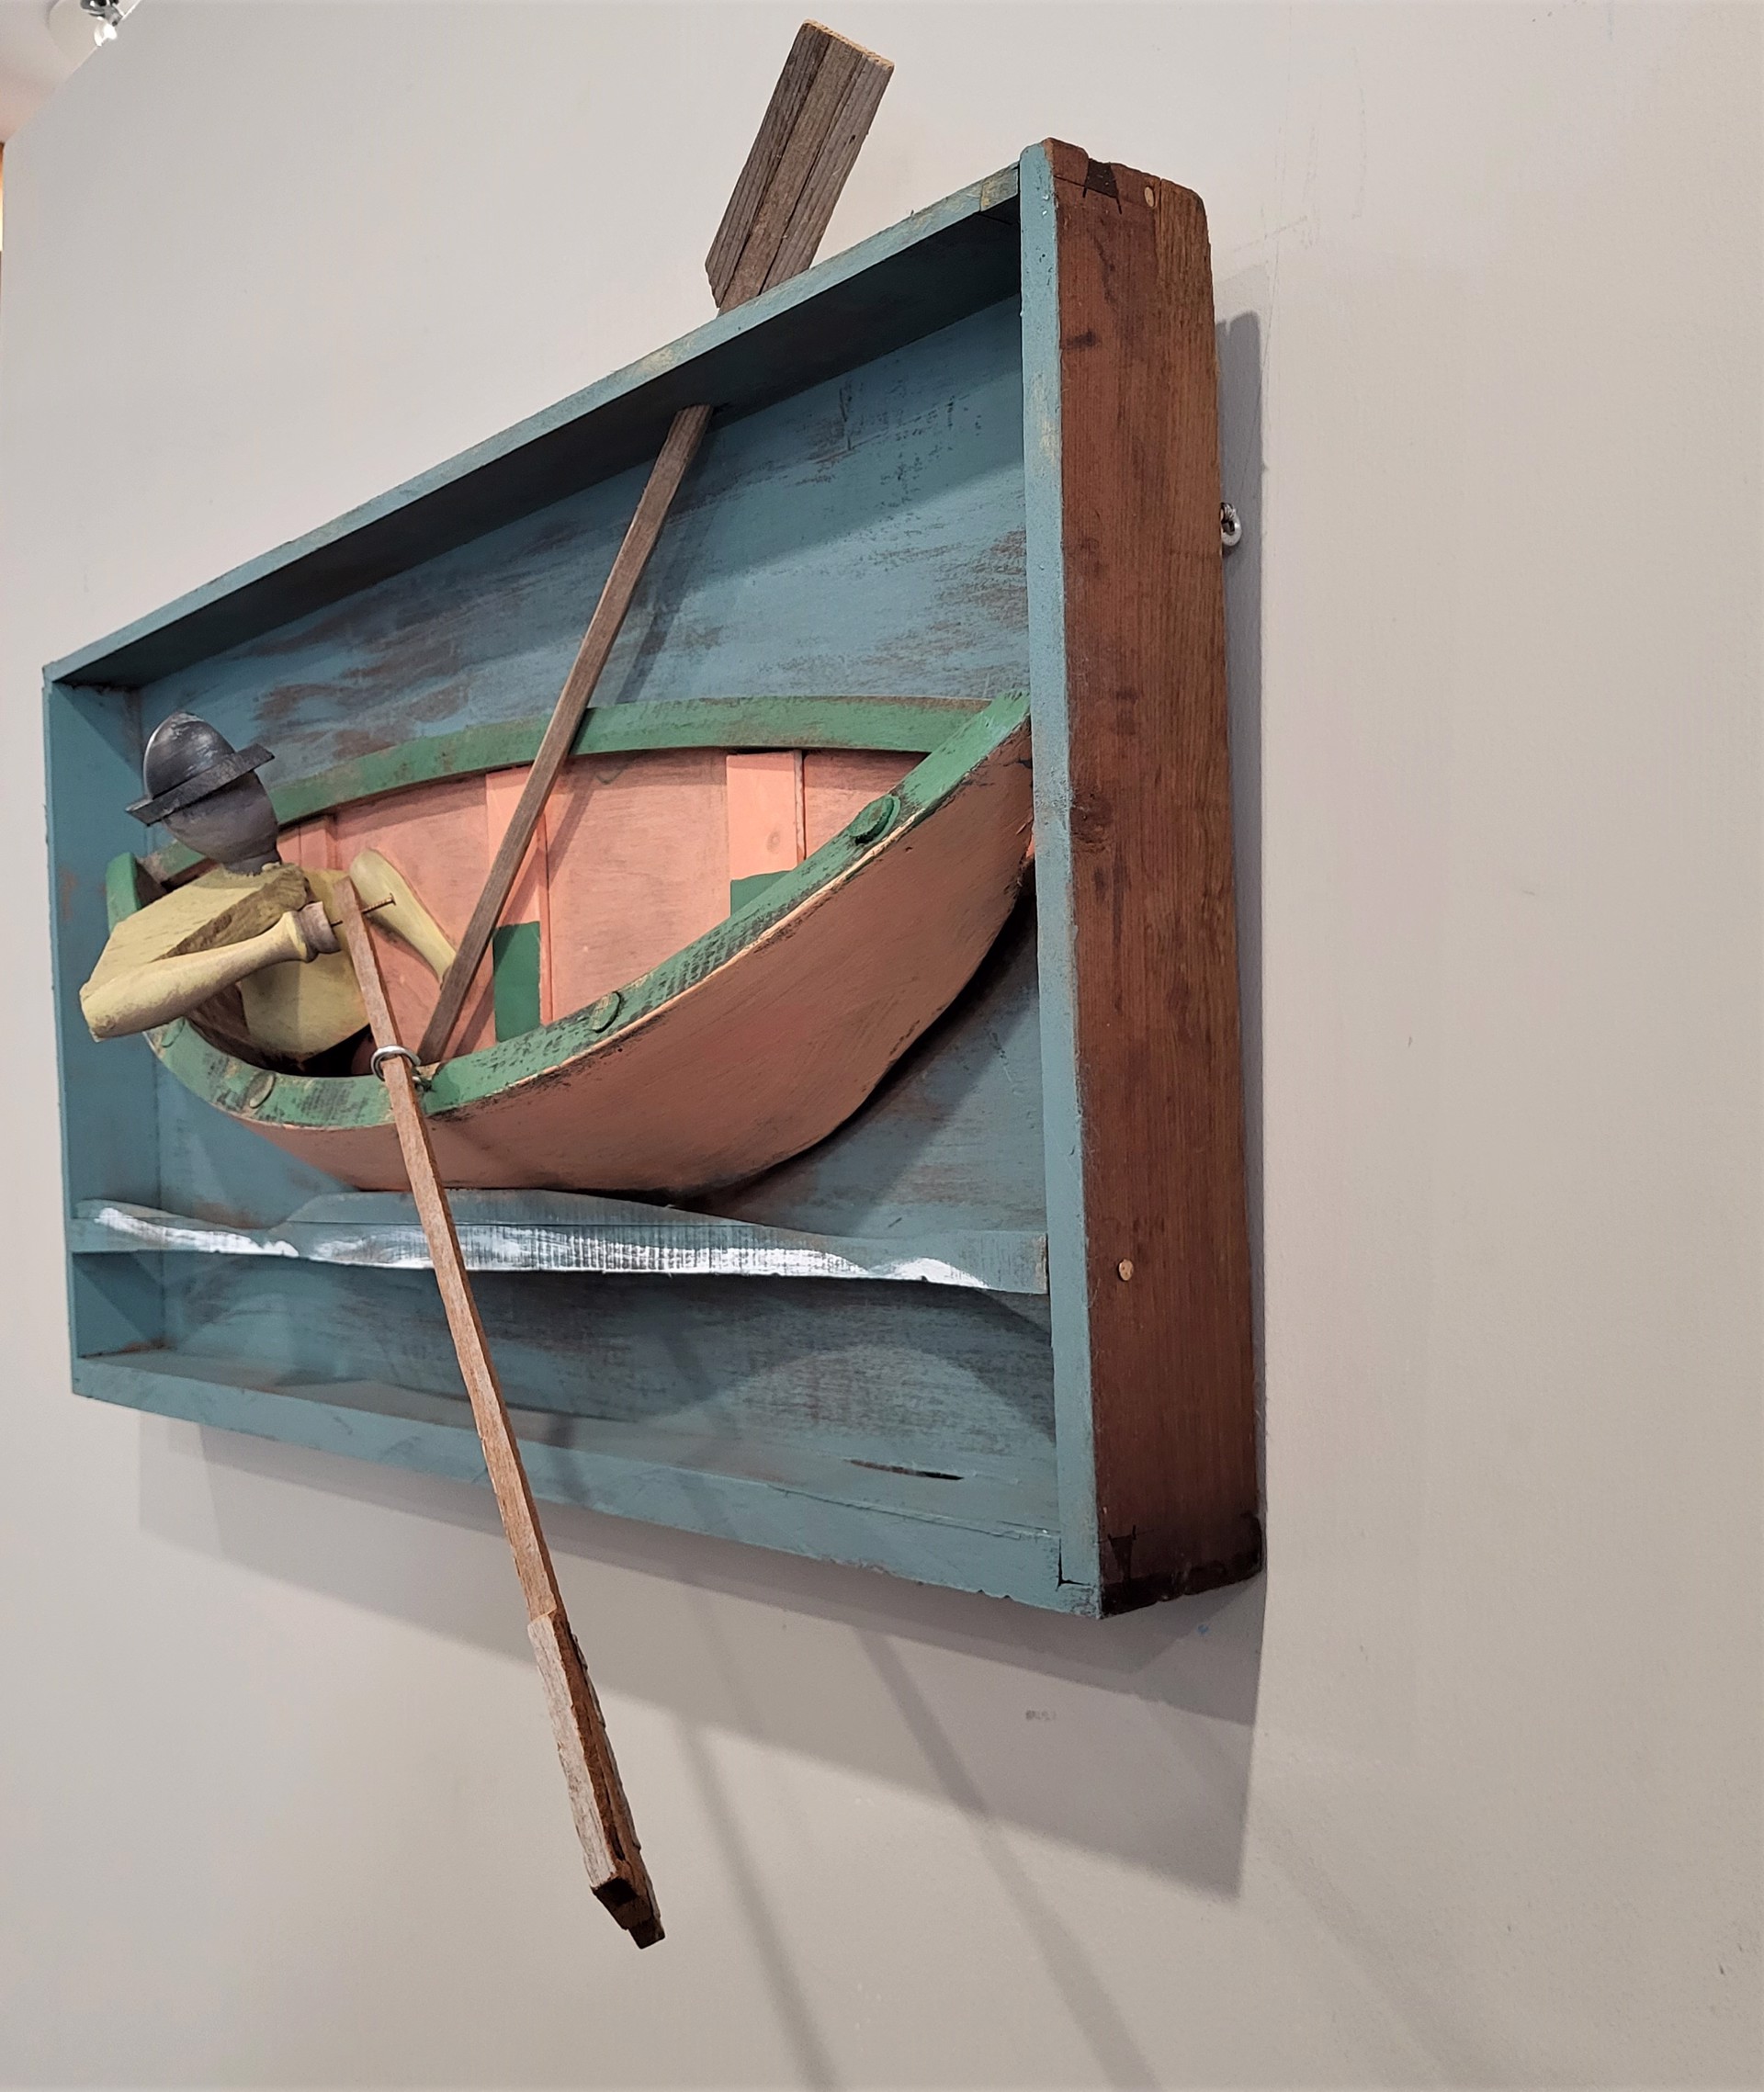 SHIPPED OAR by ANDRE BENOIT